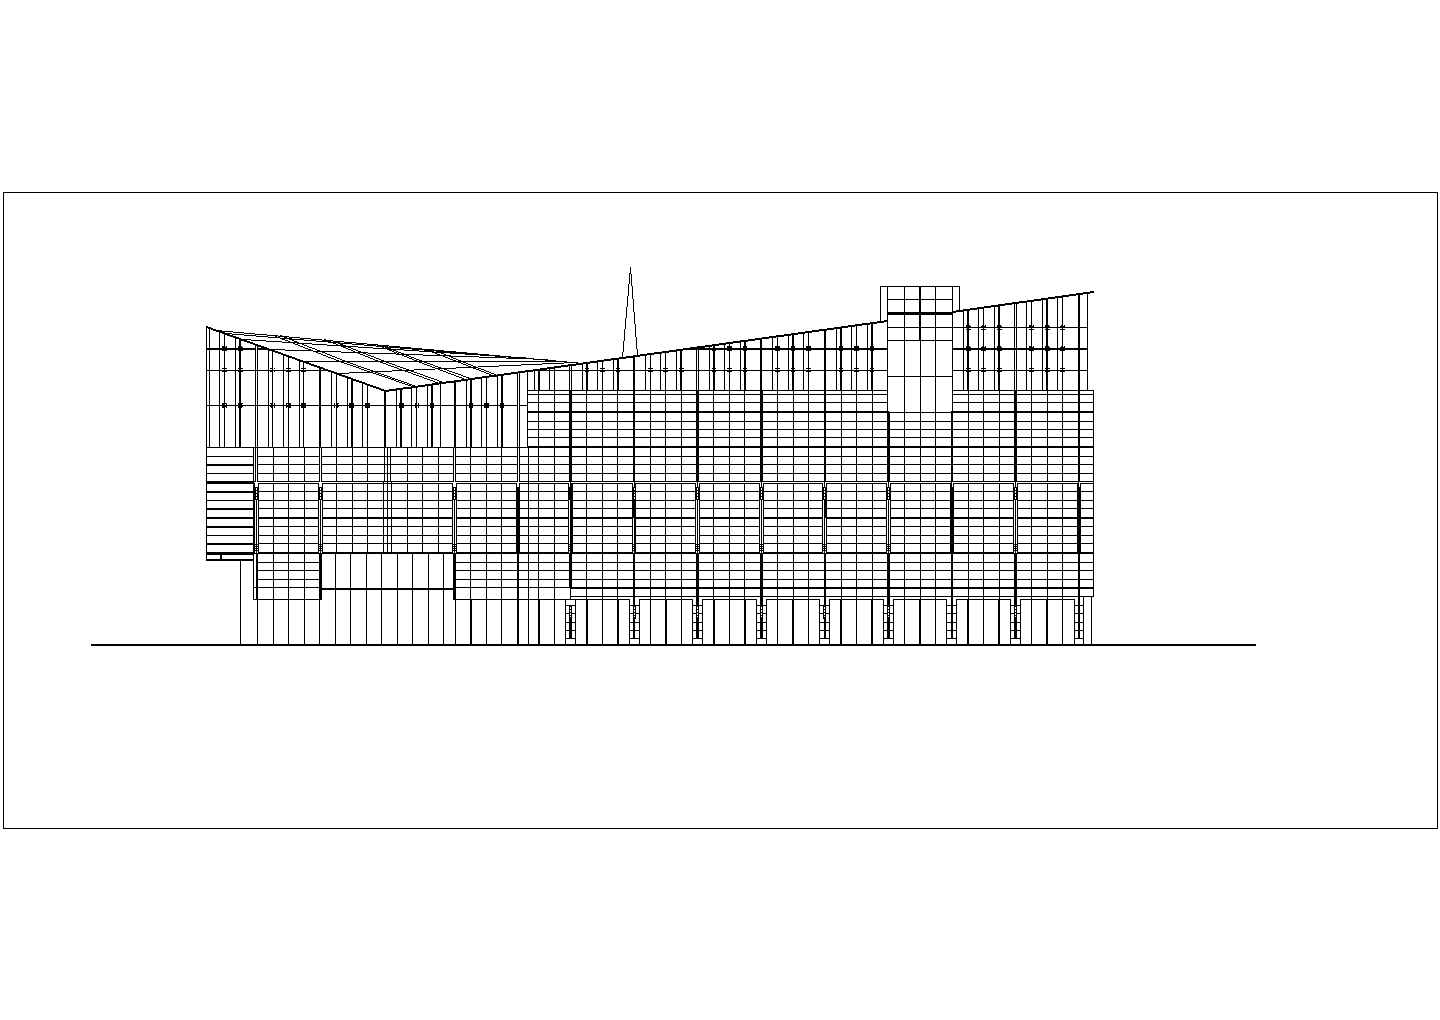 2012年美国底律特滨水区景观规划概念设计竞赛图